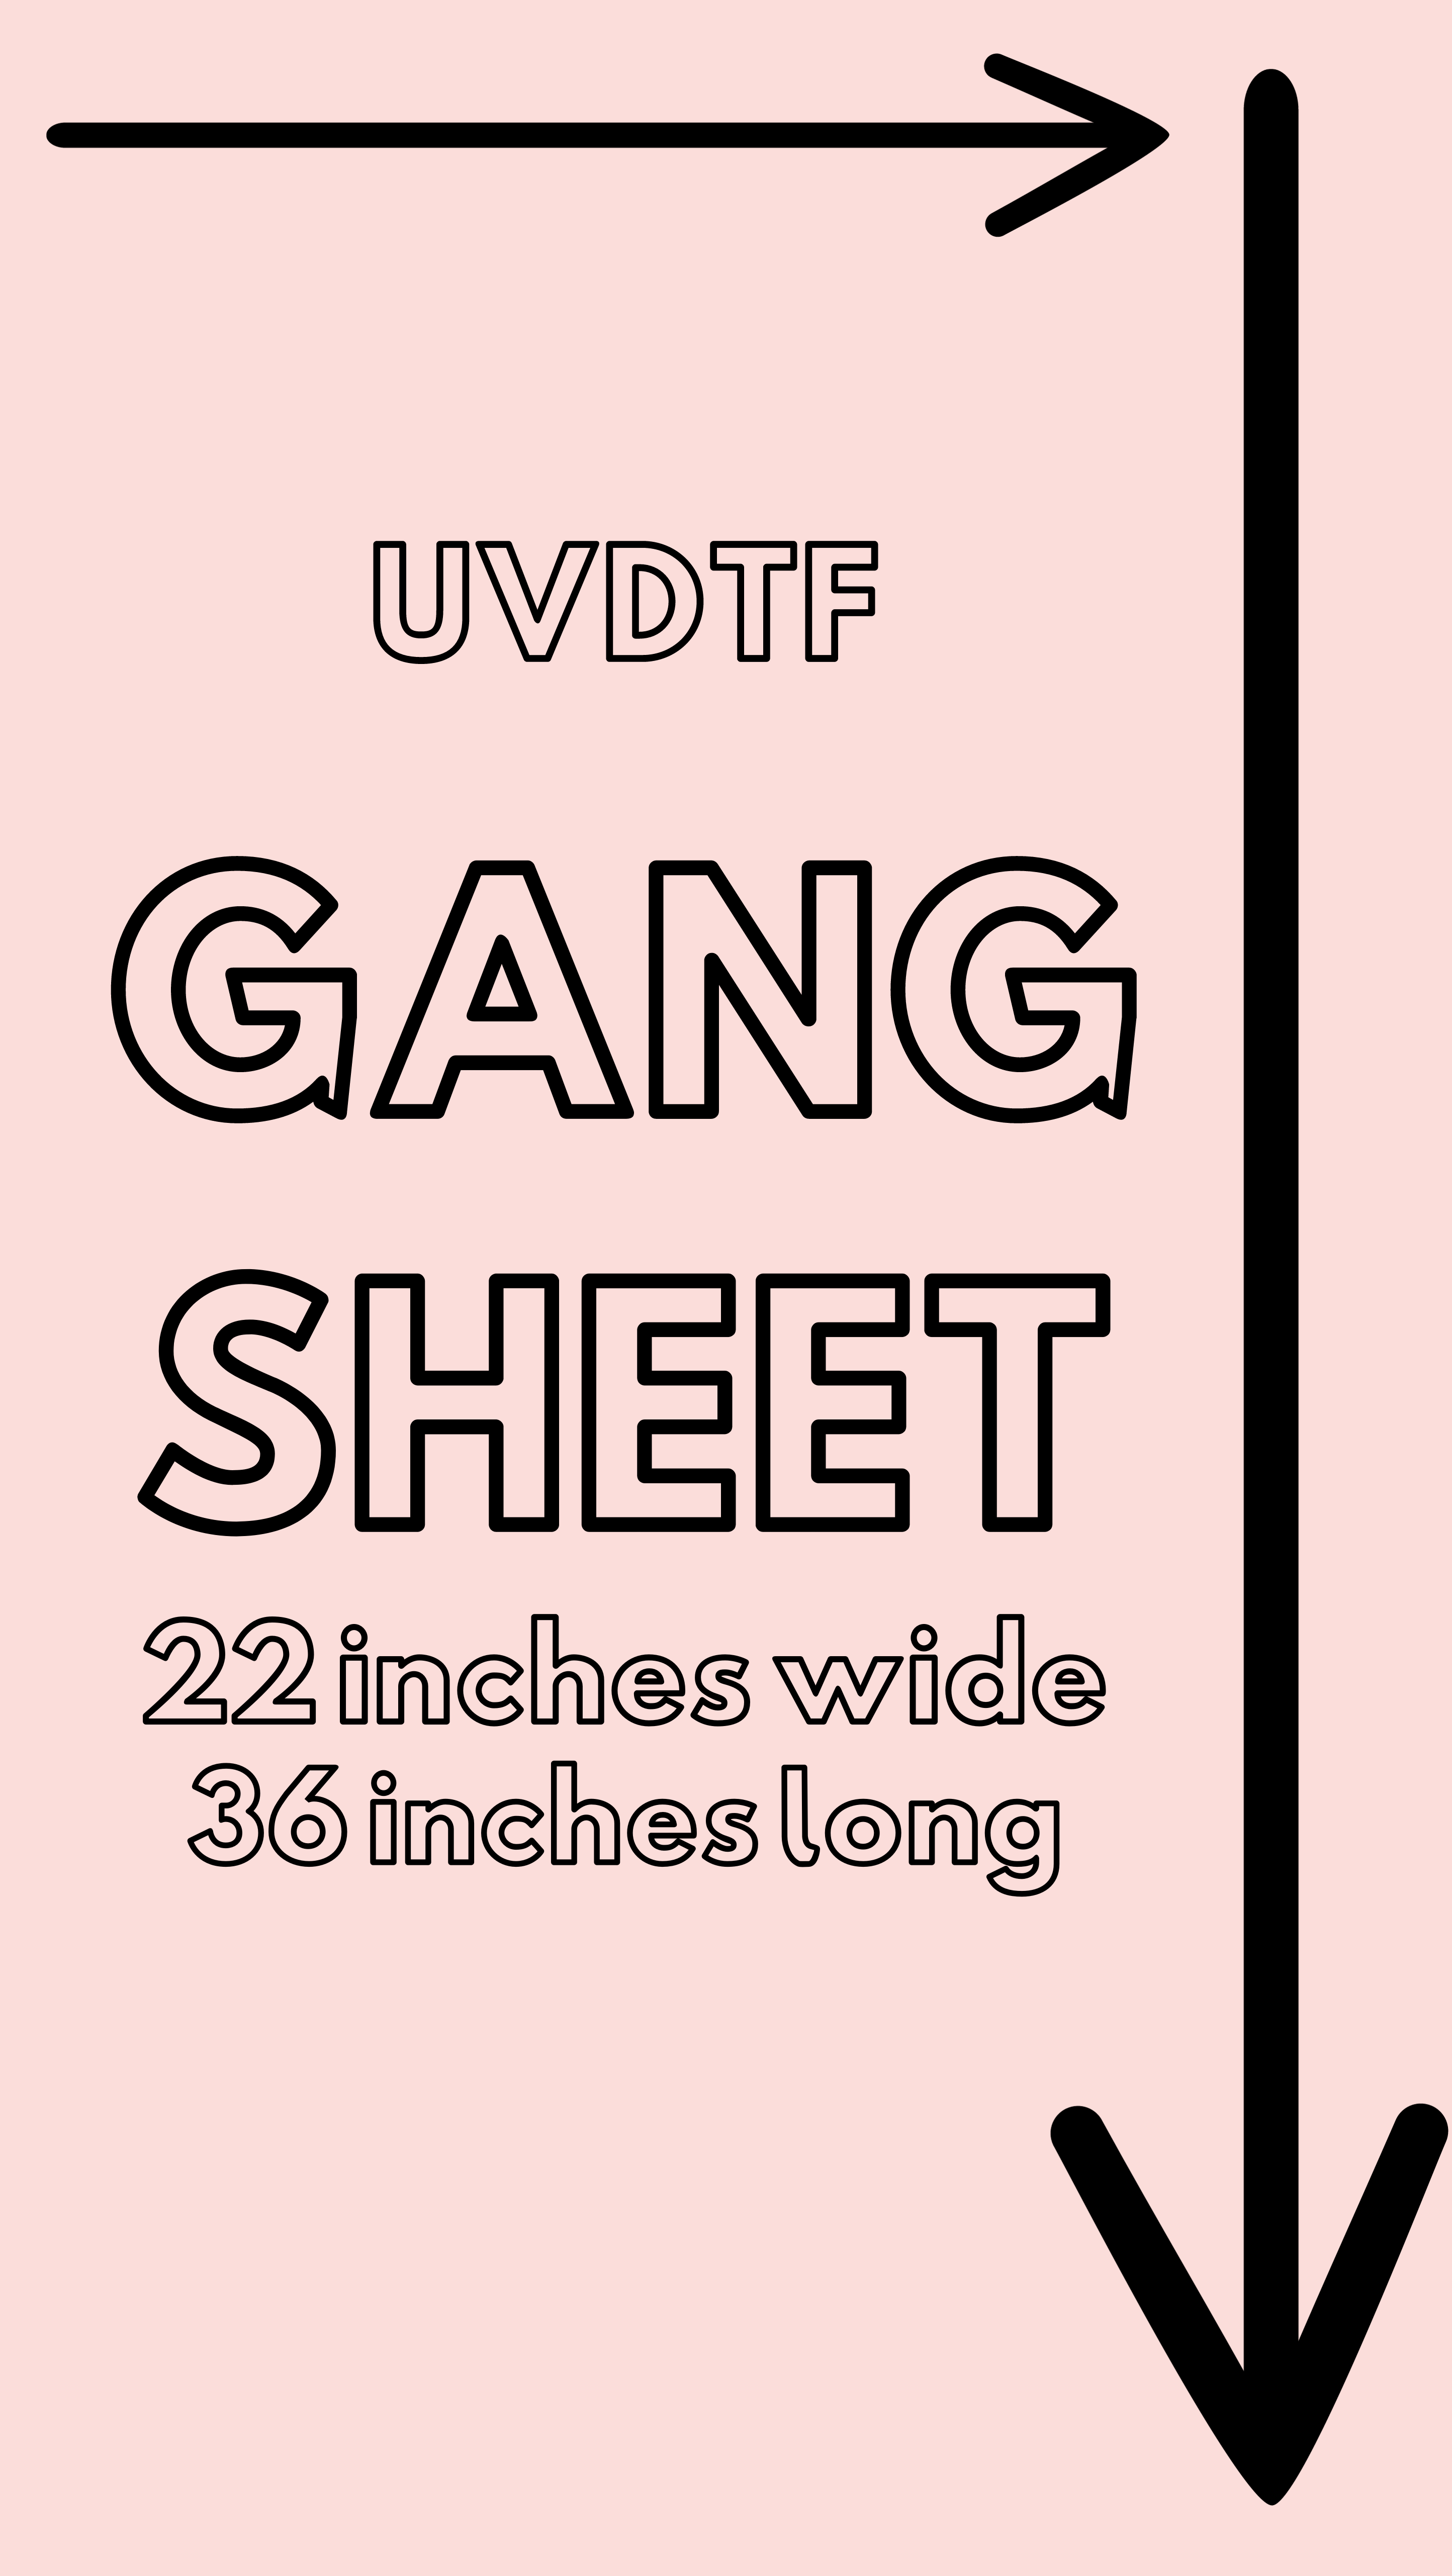 UVDTF-UPLOAD YOUR OWN GANG SHEET